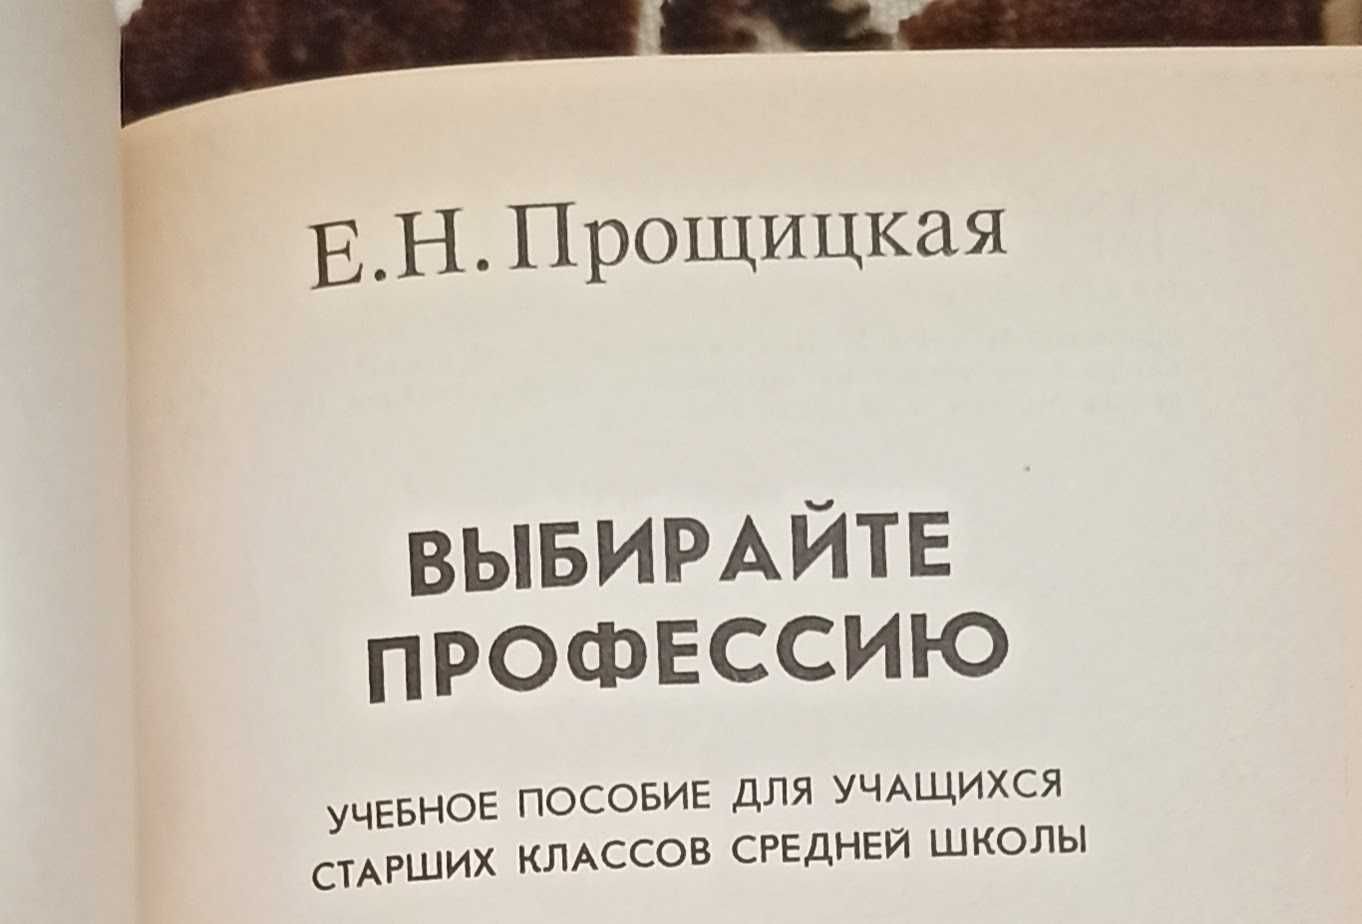 Книга Е. Н. Прощицкая "Выбирайте профессию"